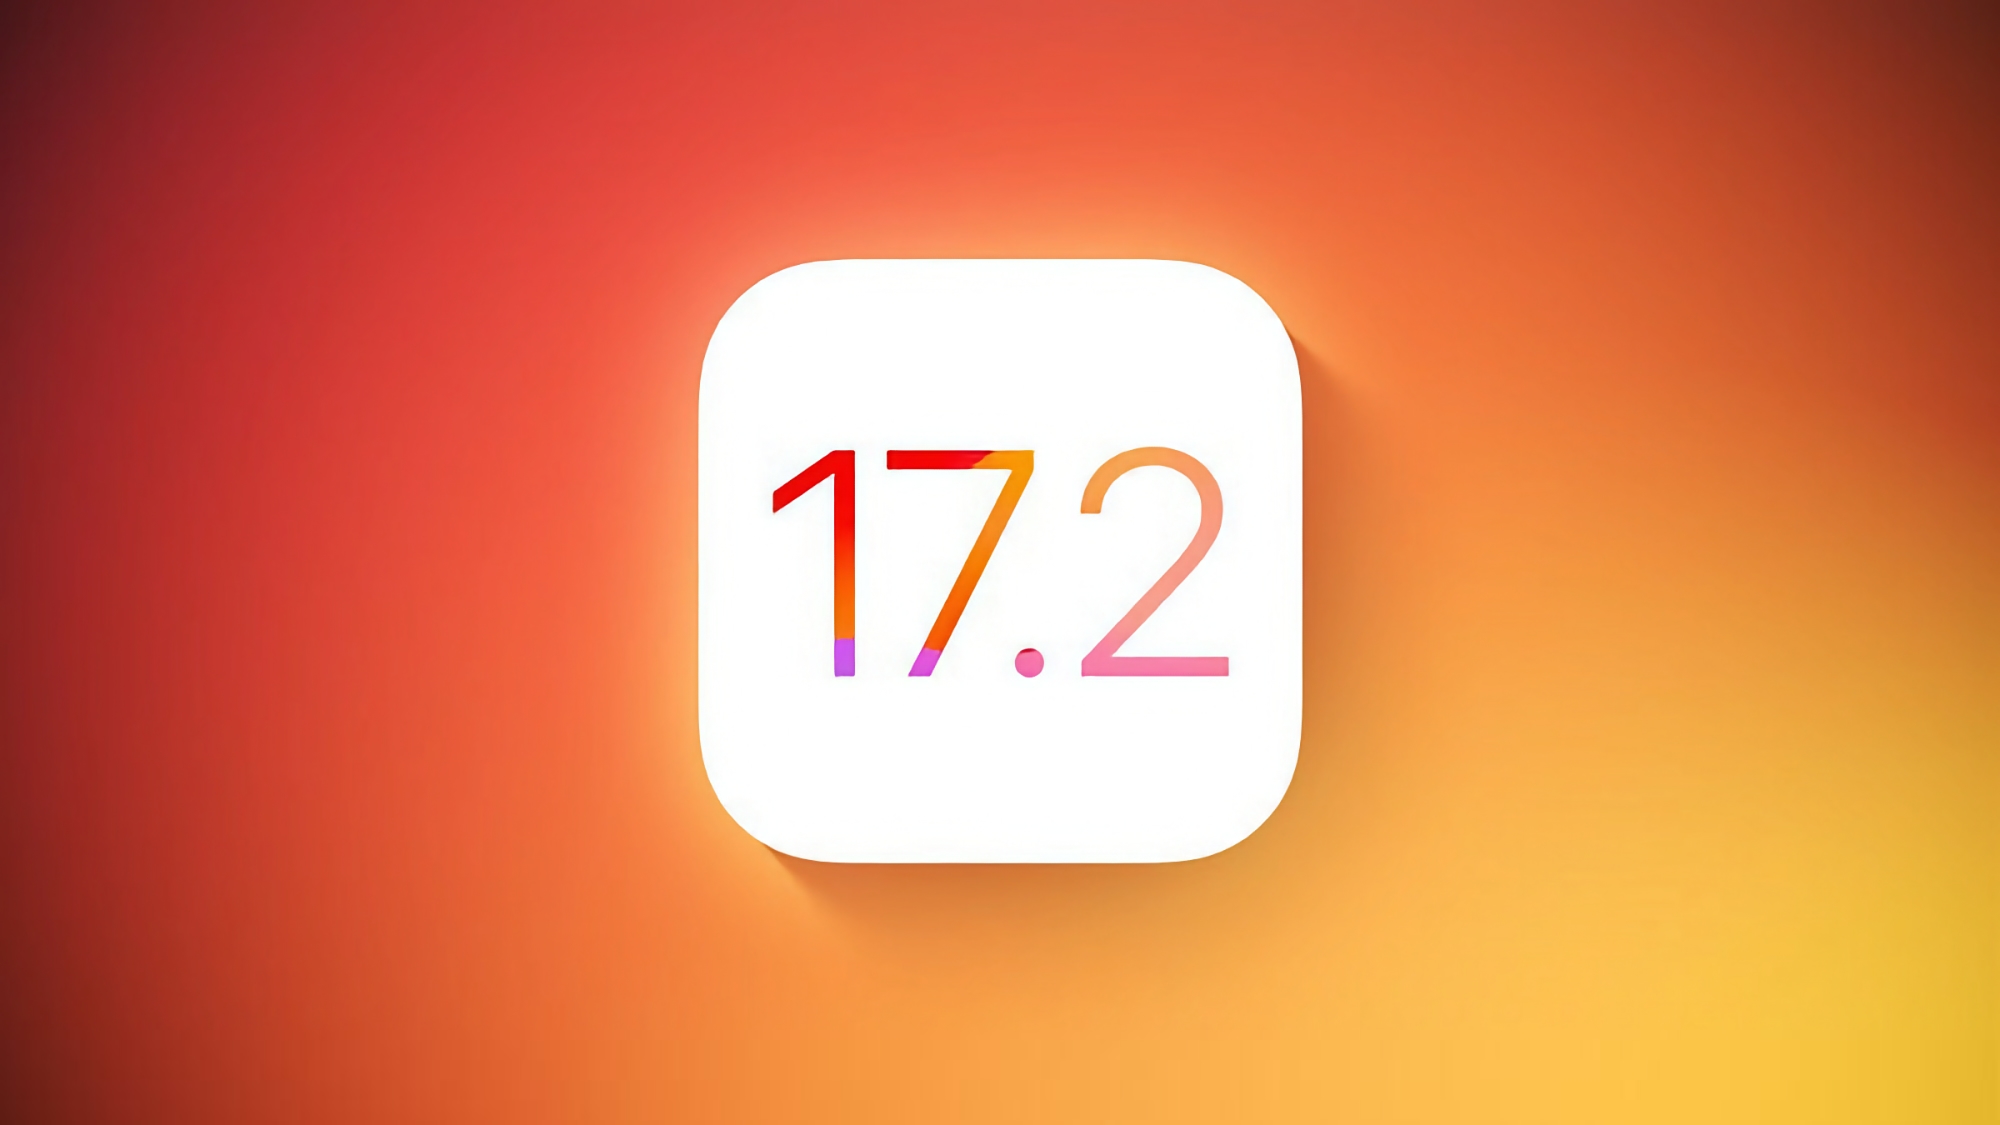 Apple випустила iOS 17.2 Beta 1 із додатком Journal і новими функціями